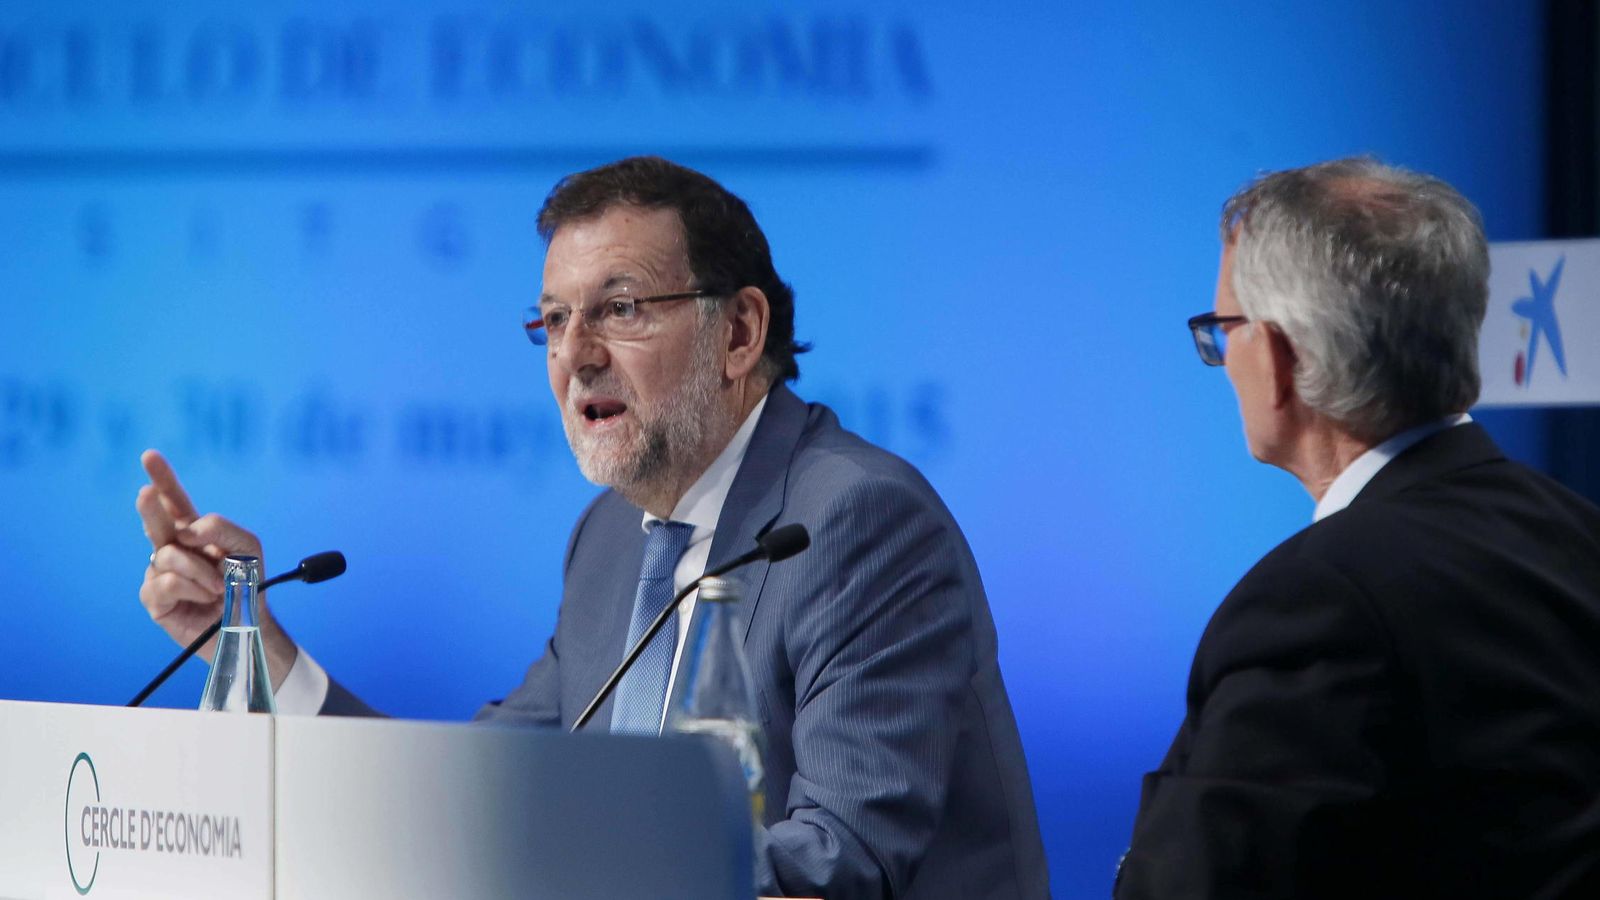 Foto: El presidente del Gobierno, Mariano Rajoy (i), junto al presidente del Círculo de Economía, Antón Costas. (Efe)